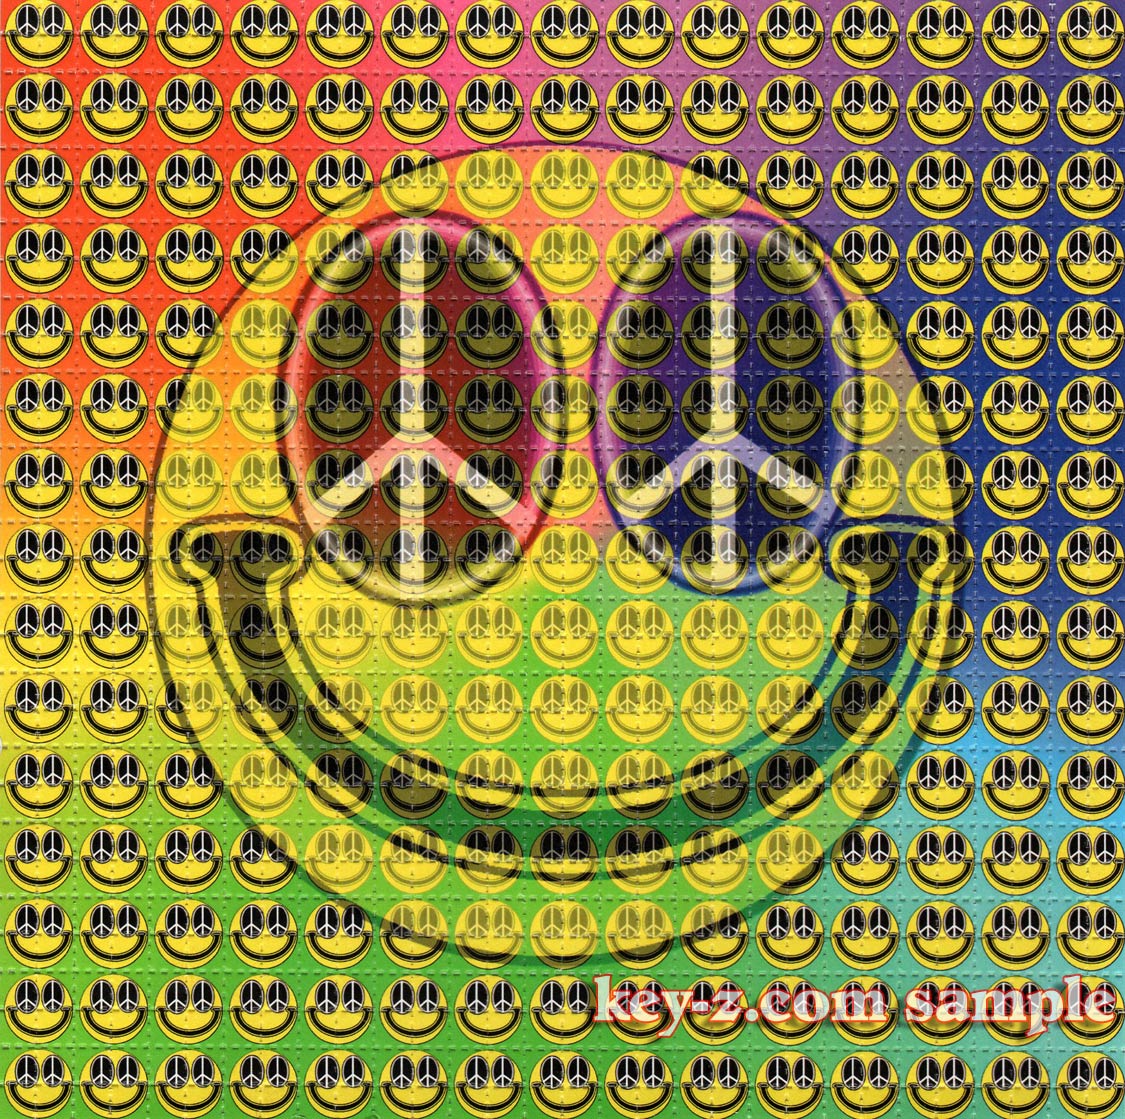 Smiley Peace LSD blotter art print